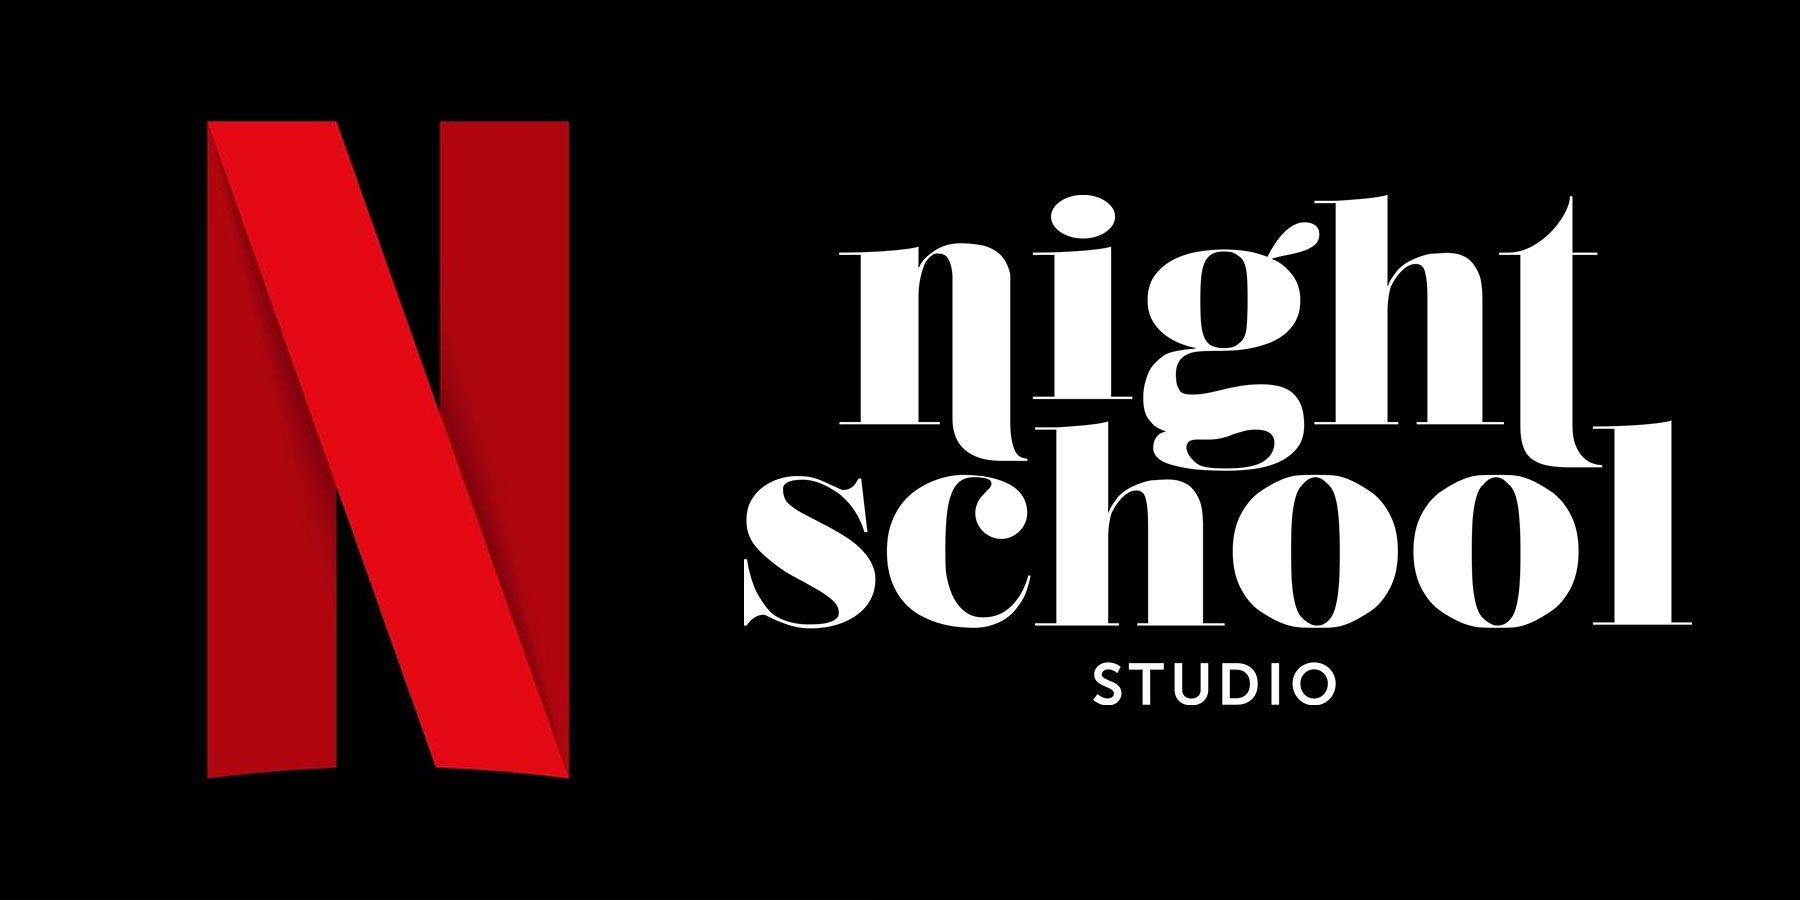 Akvizícia štúdia Night School od Netflixu je dobrým znamením pre jeho ambície v oblasti streamovania